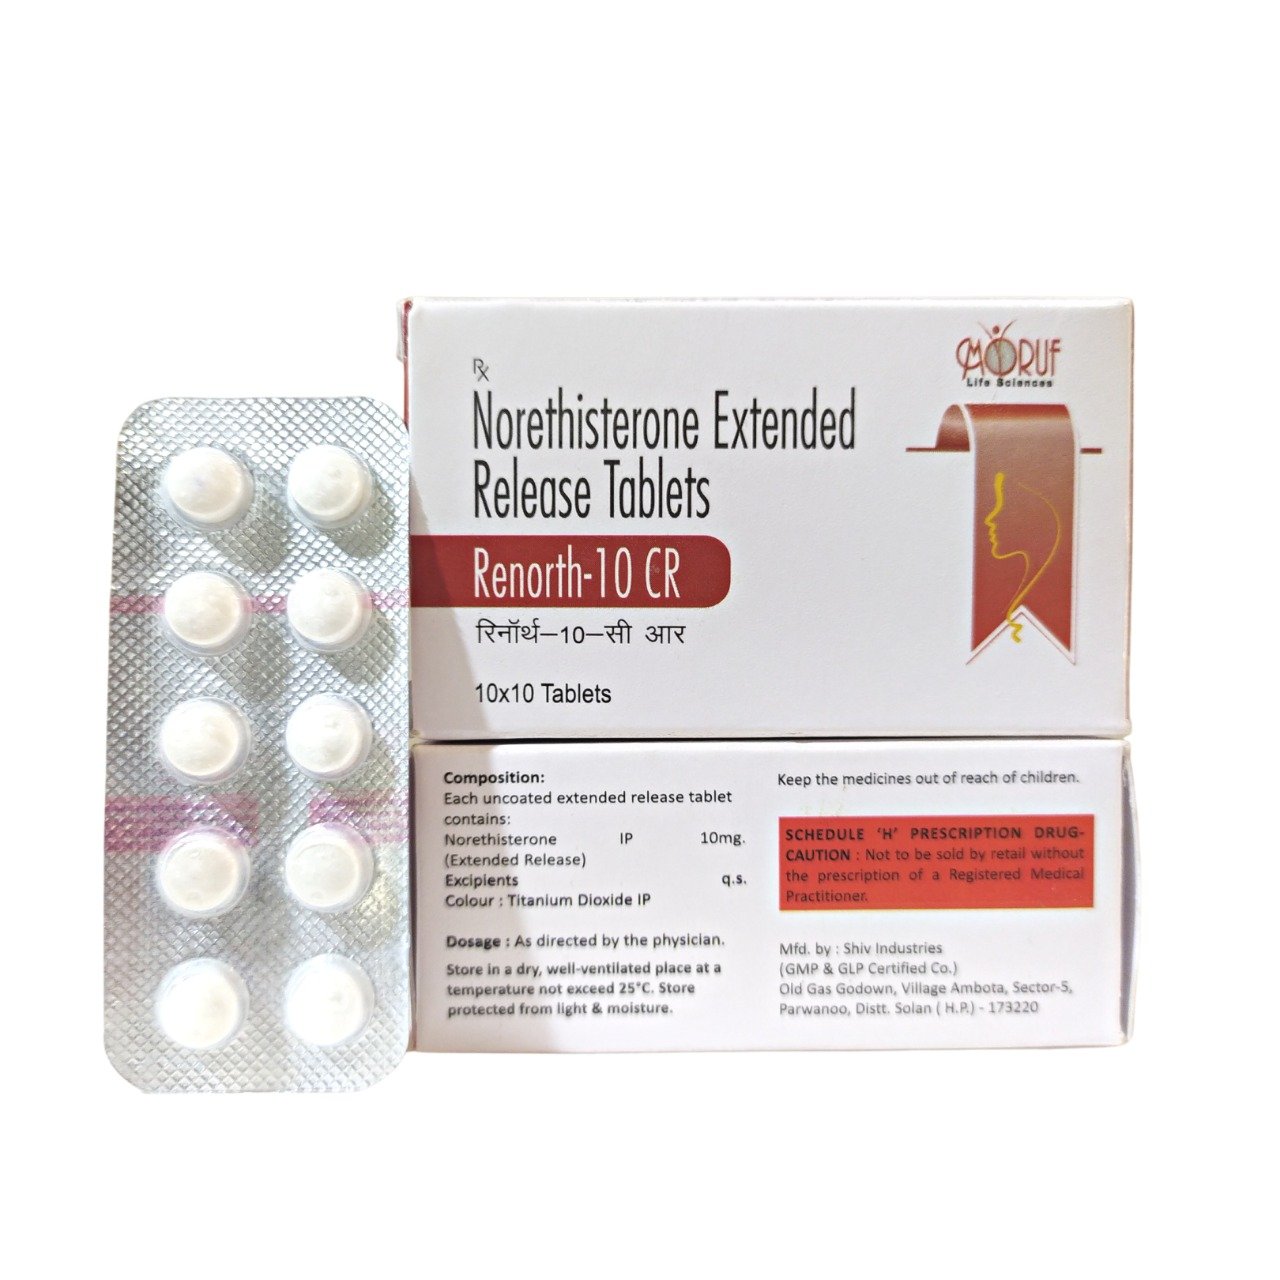 Renorth-10 mg